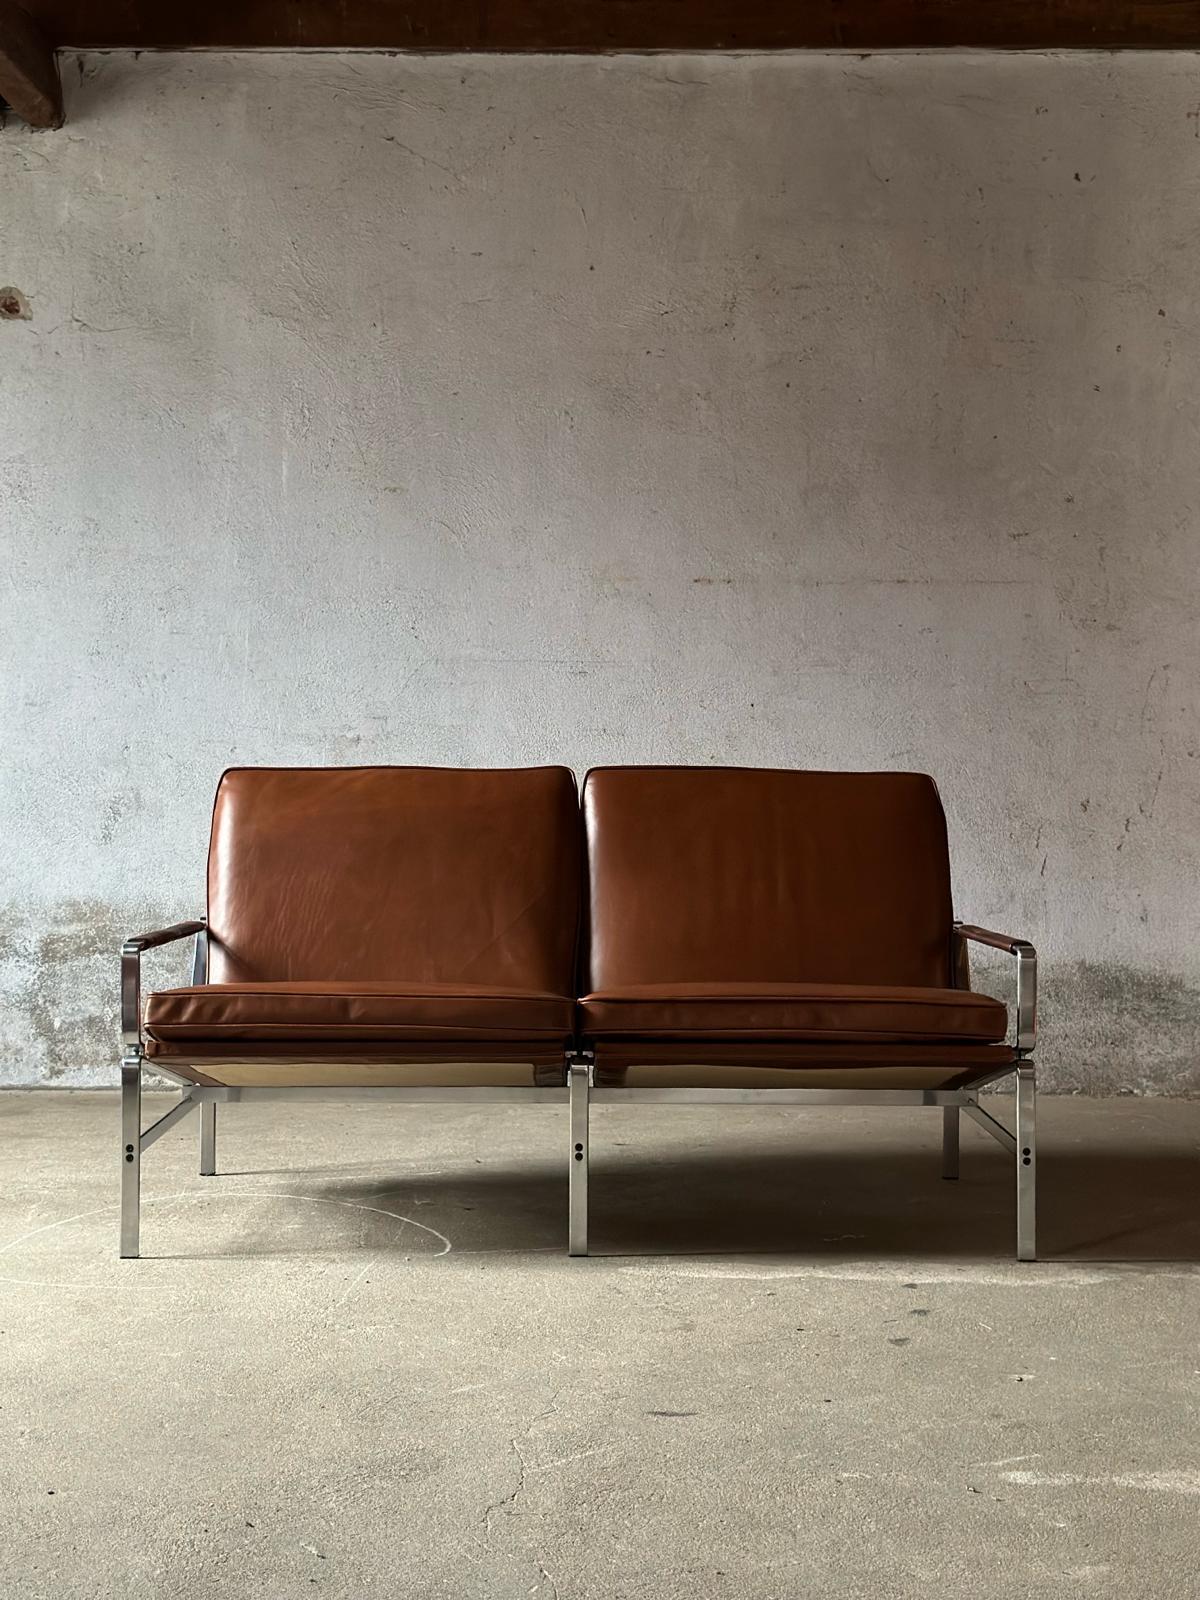 Découvrez la combinaison parfaite entre style et confort avec le canapé deux places FK 6720, un chef-d'œuvre conçu par Preben Fabricius Jorgen Kastholm. Fabriqué par Kill International au Danemark, ce canapé représente le meilleur du design